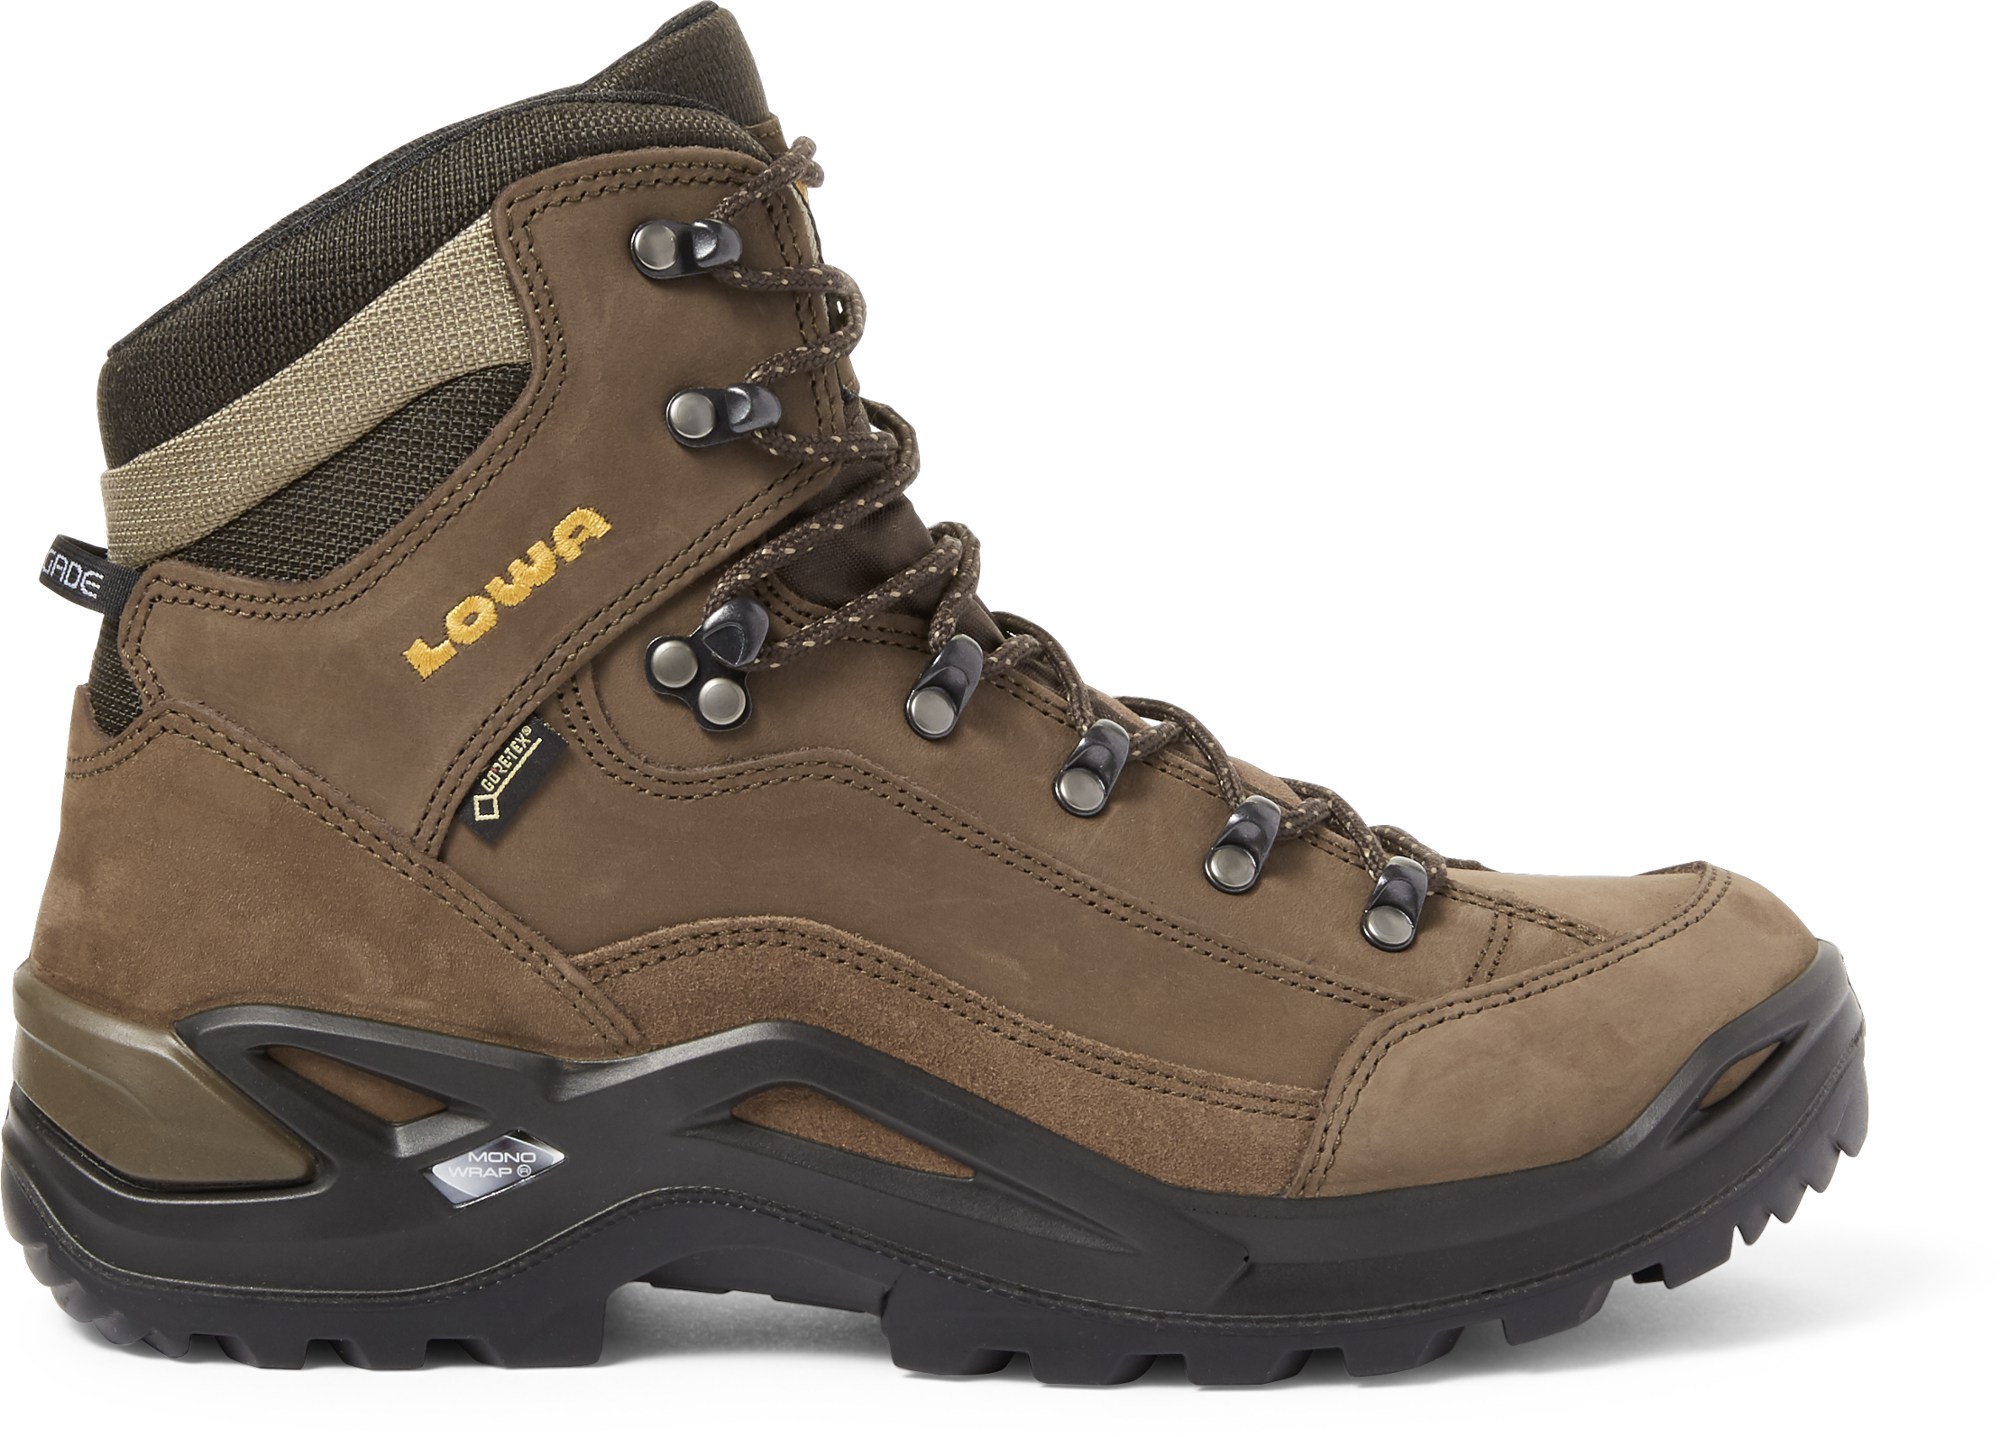 Походные ботинки Renegade GTX Mid — мужские Lowa, коричневый мужские водонепроницаемые походные ботинки черные ботинки для походов и горного туризма обувь для улицы для альпинизма для зимы 2022